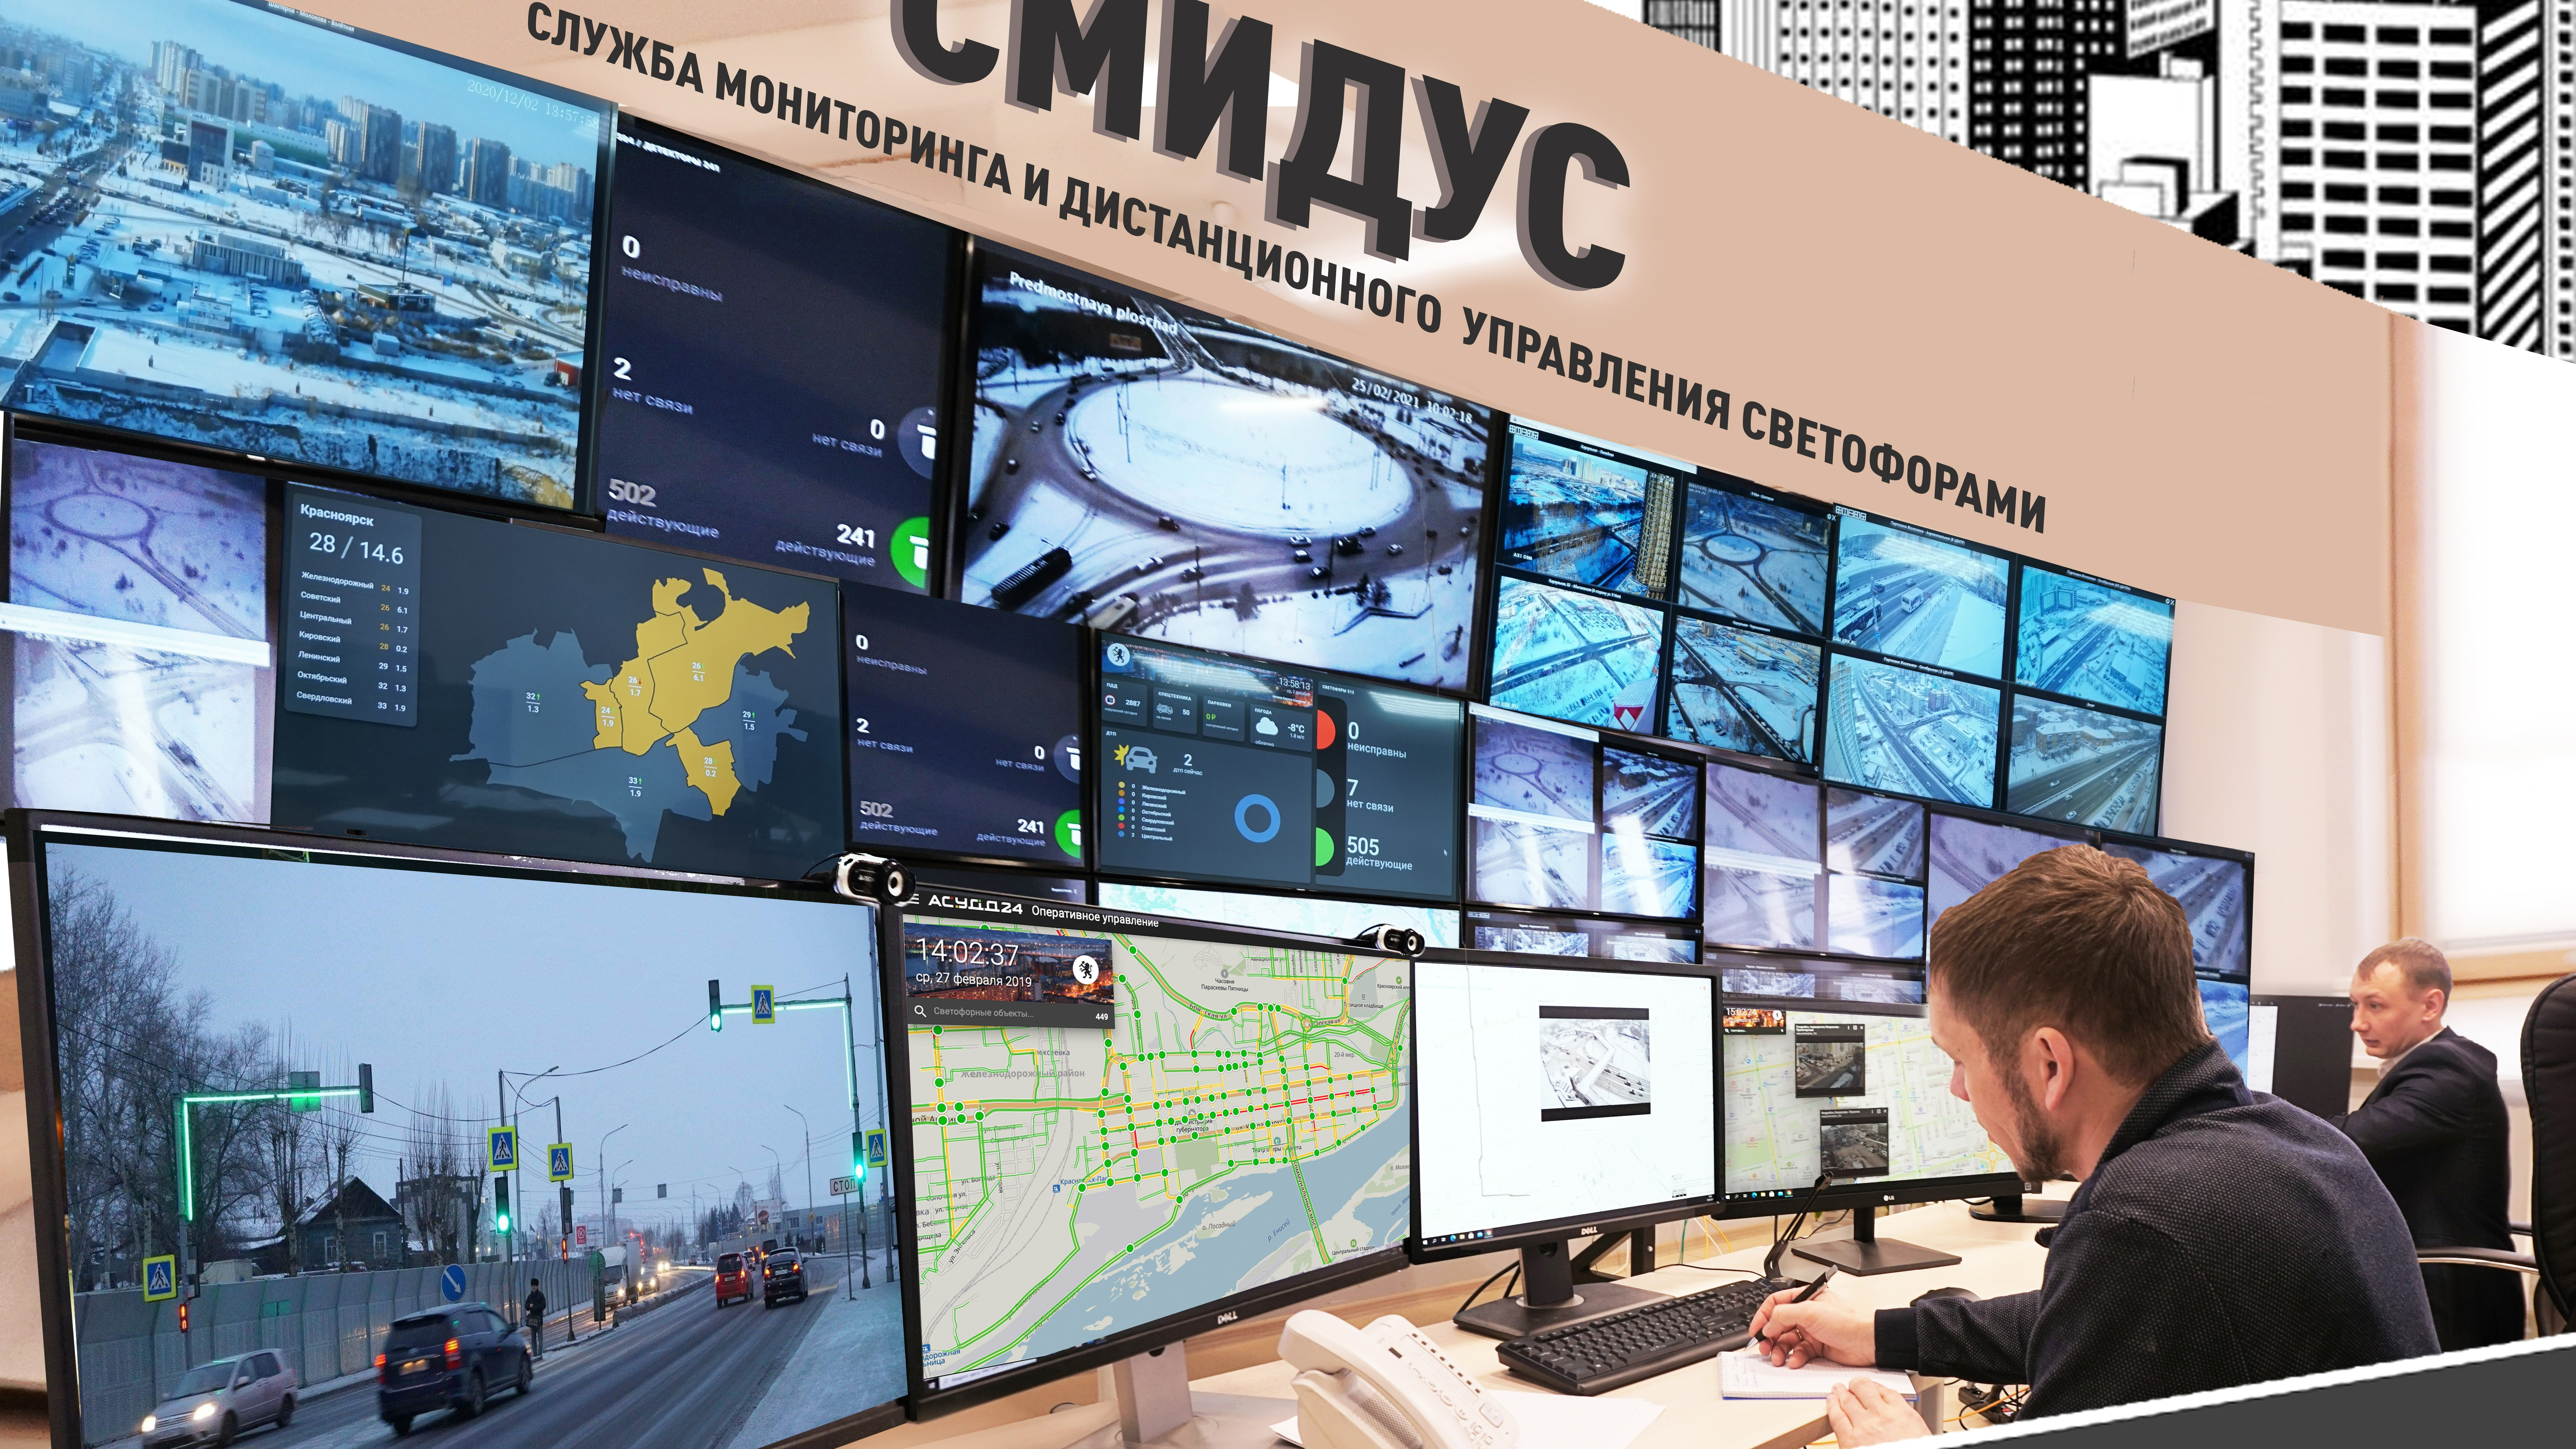 Служба мониторинга и дистанционного управления светофорными объектами